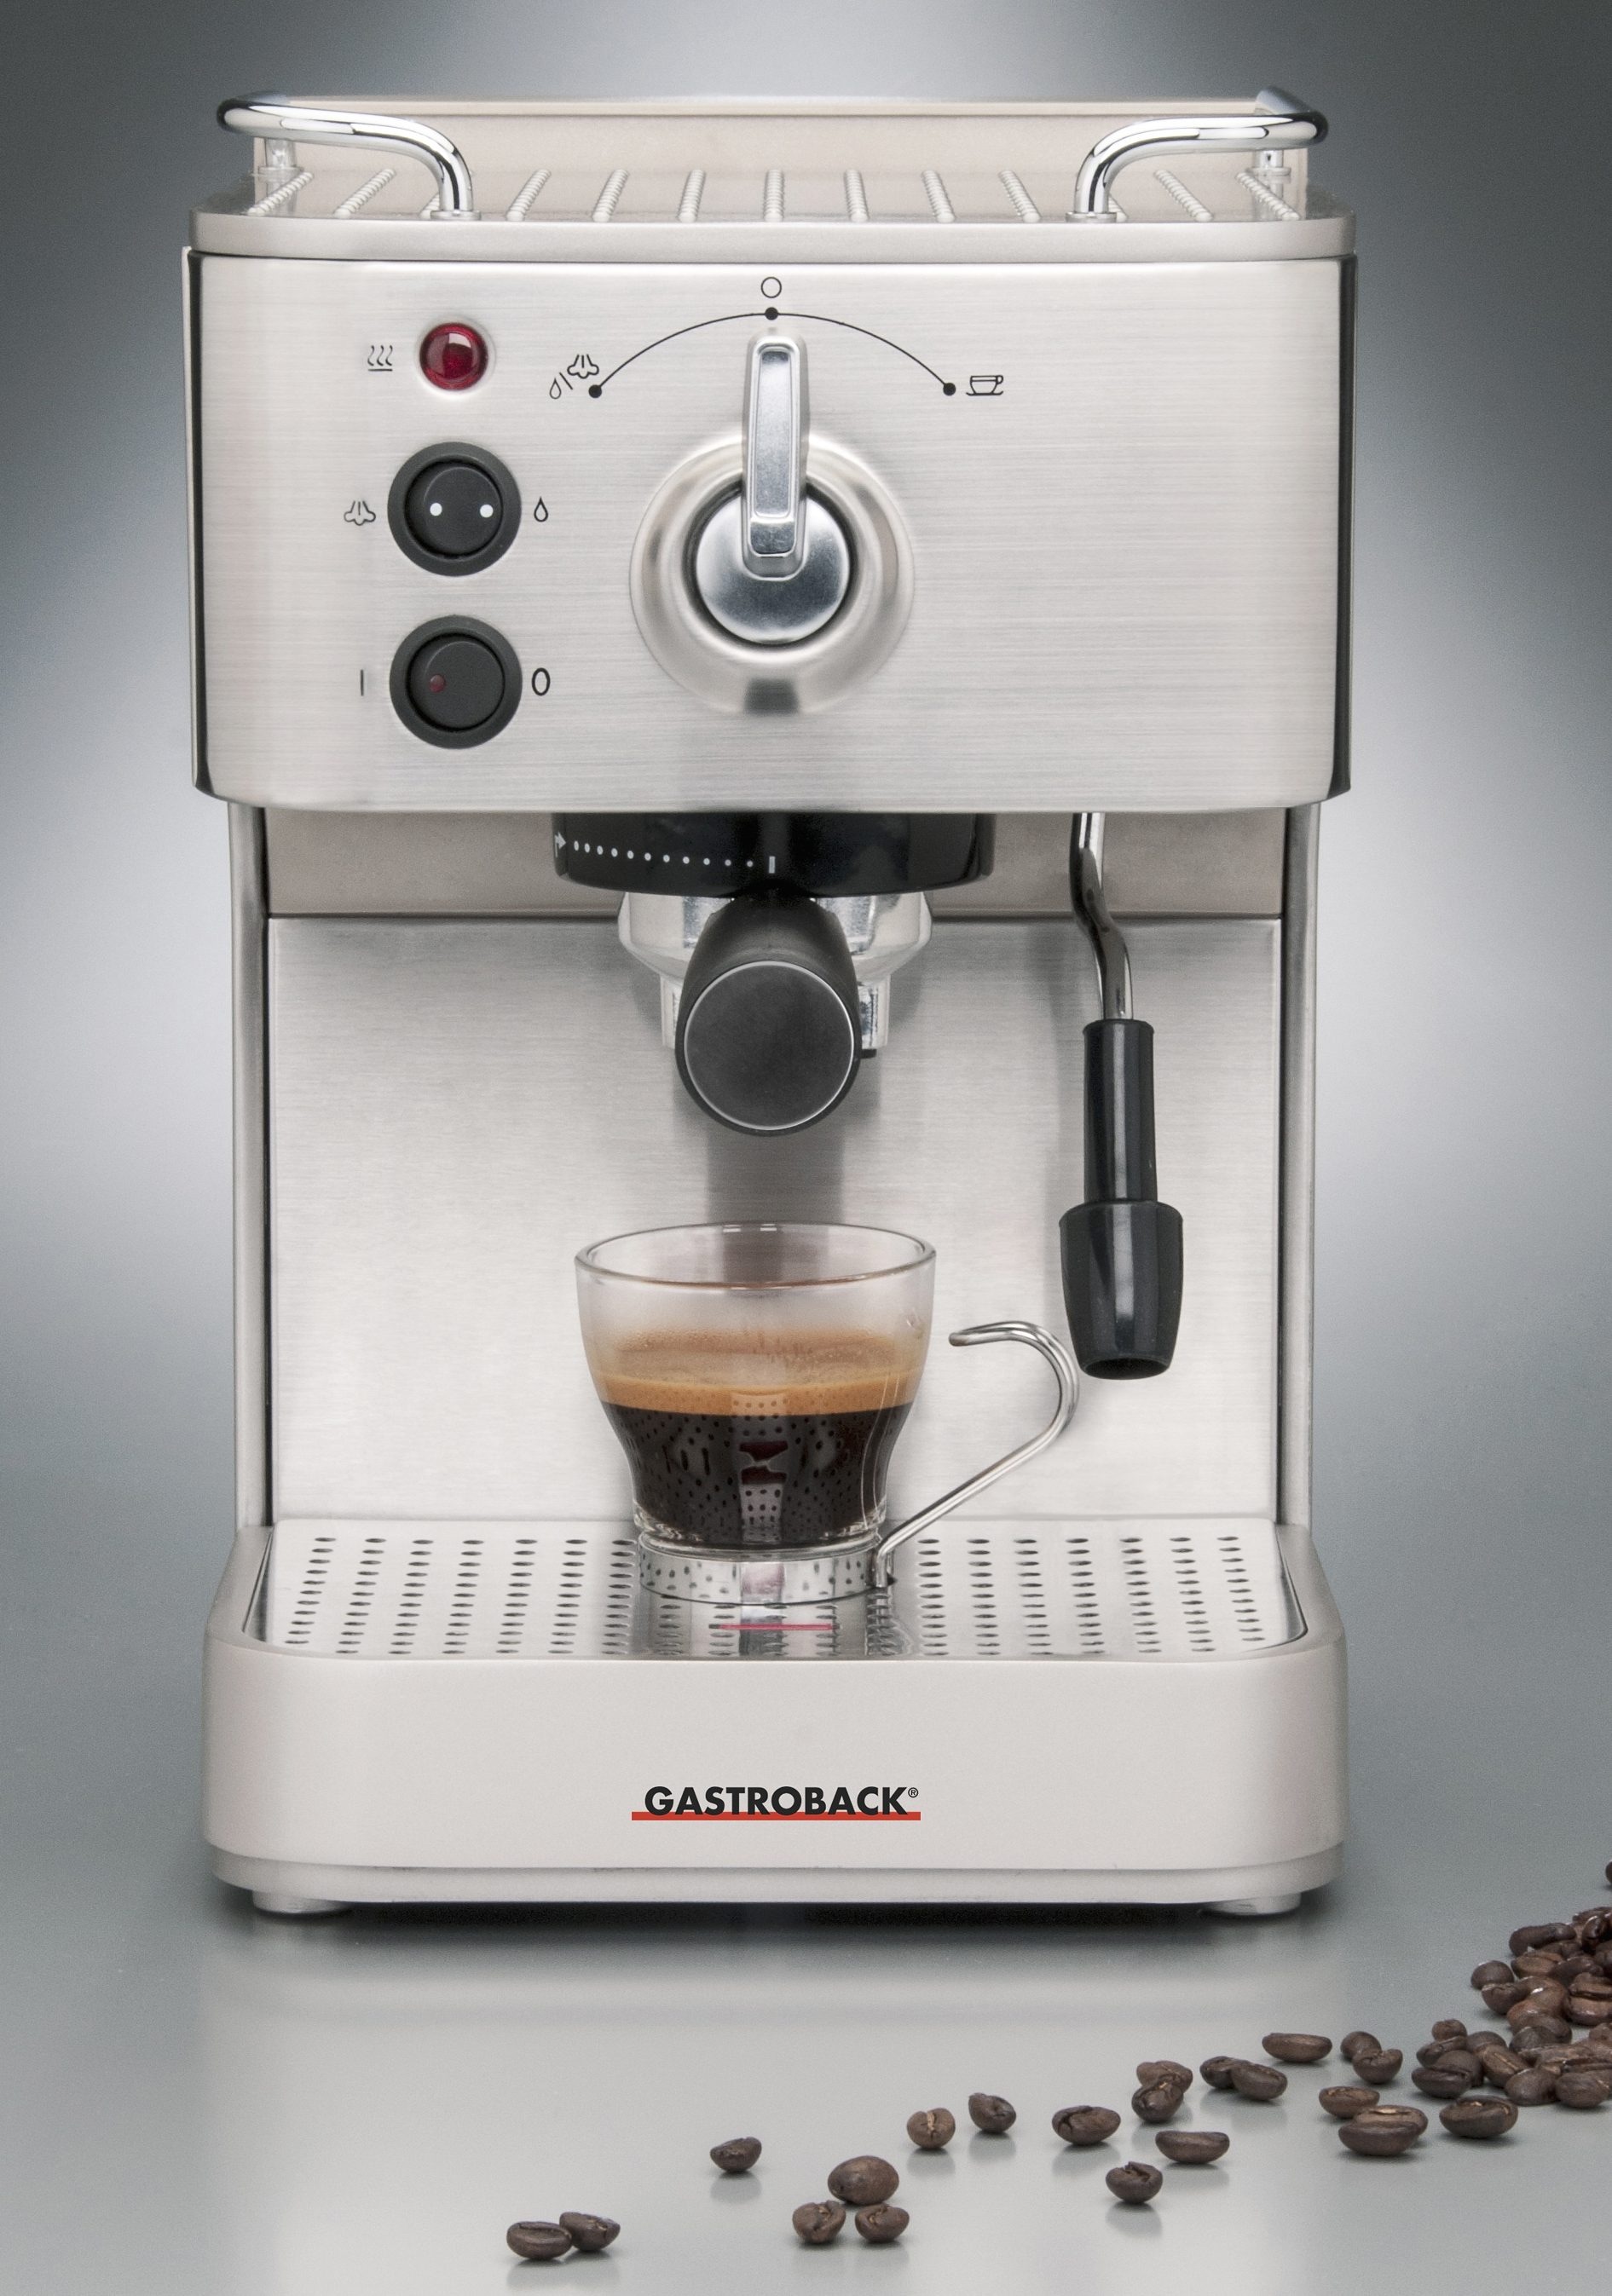 Gastroback Espressomaschine »Design Espresso Plus 42606«, Siebträger, auch für Espressopads geeignet, inkl. Milchkännchen